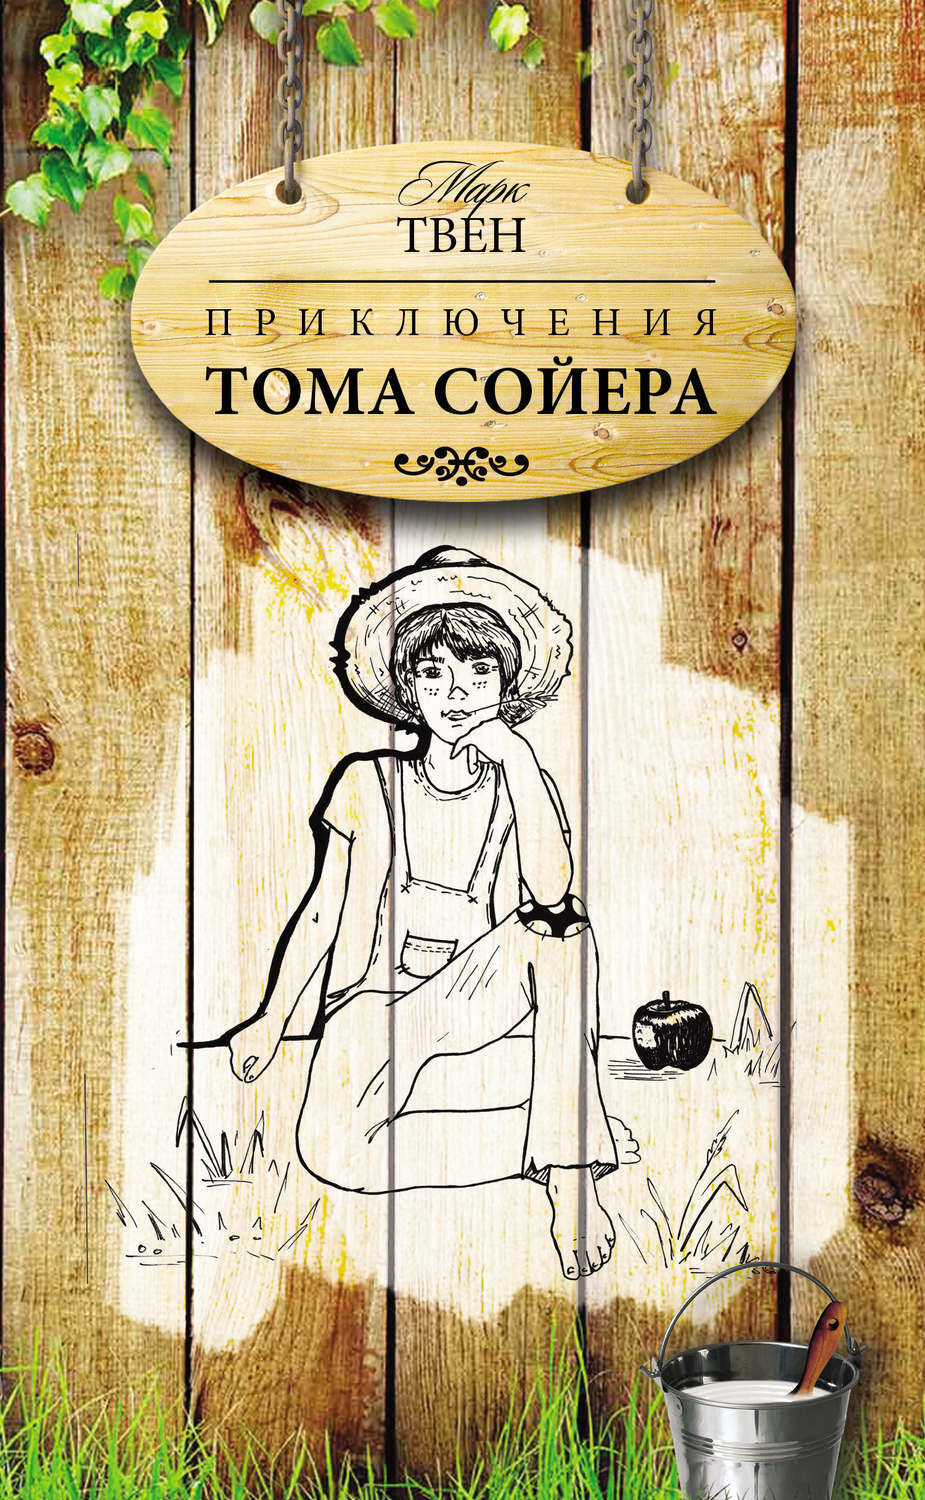 Том сойер писатель. Приключения марка Тома Сойера обложка книги. Марка Твена приключения Тома Сойера. Книга приключения Тома Сойера.